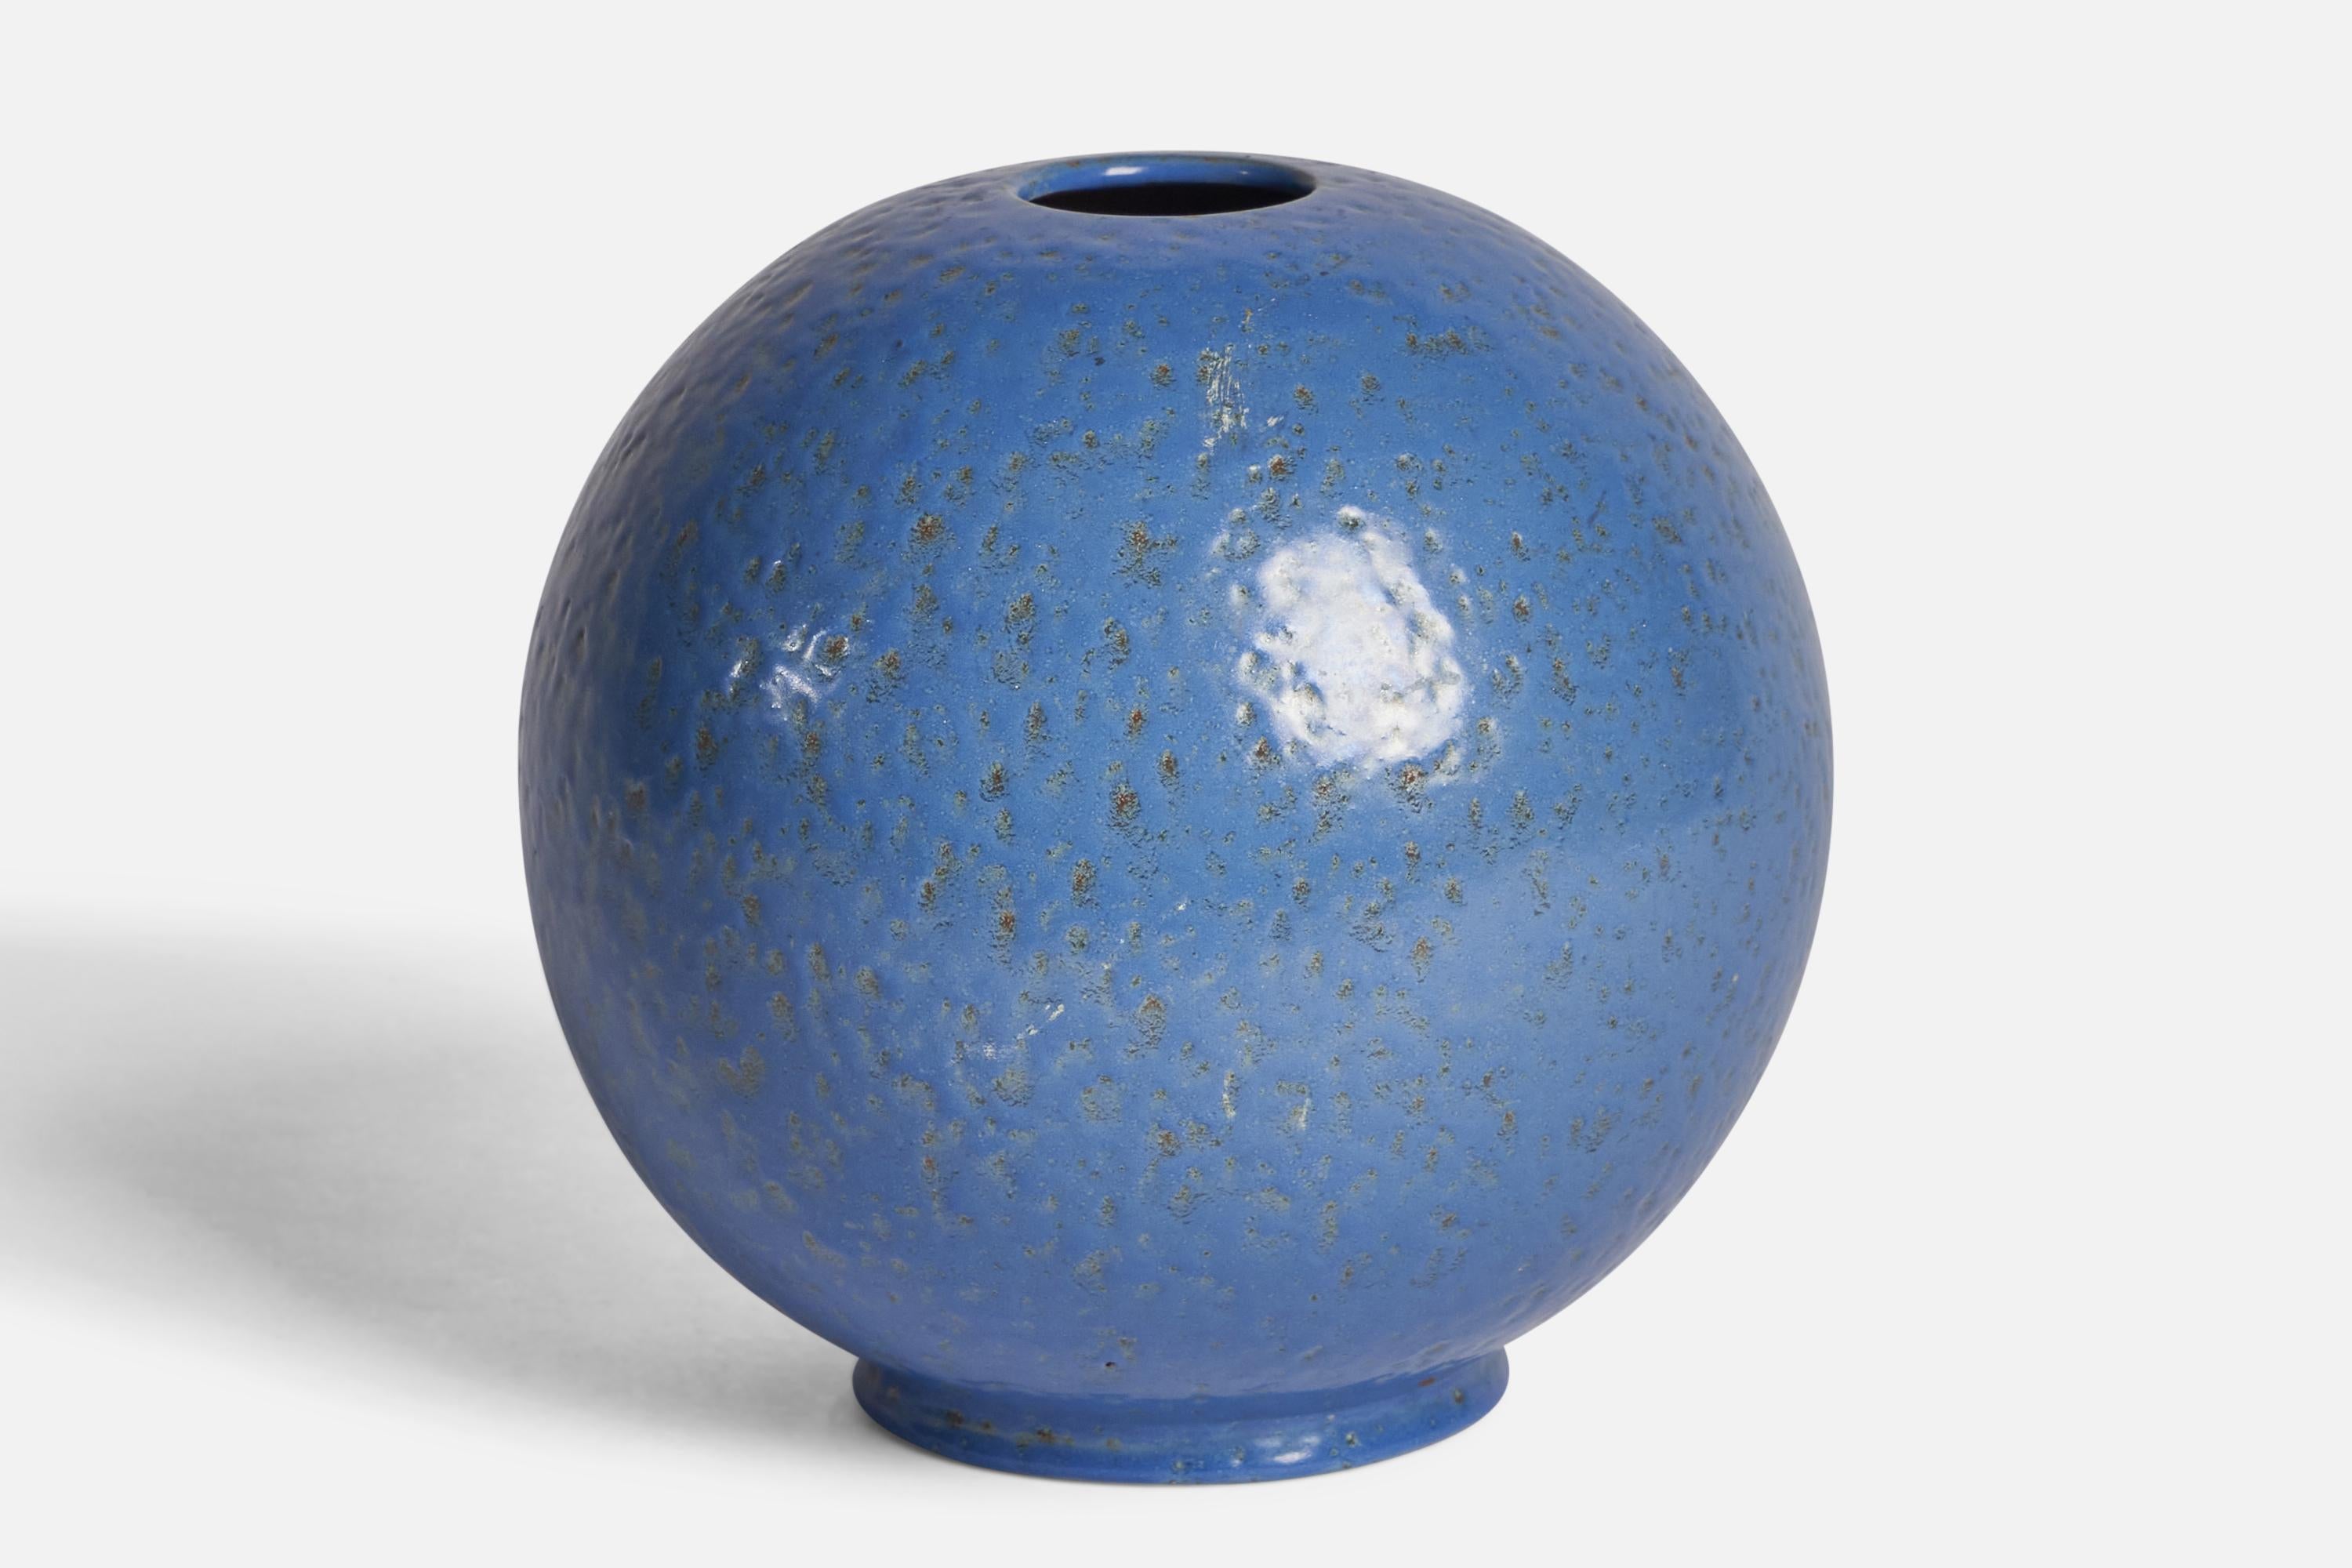 A blue-glazed earthenware vase designed by Jerk Werkmäster and produced by Nittsjö, Sweden, 1930s.

“434 / KK” signature on bottom